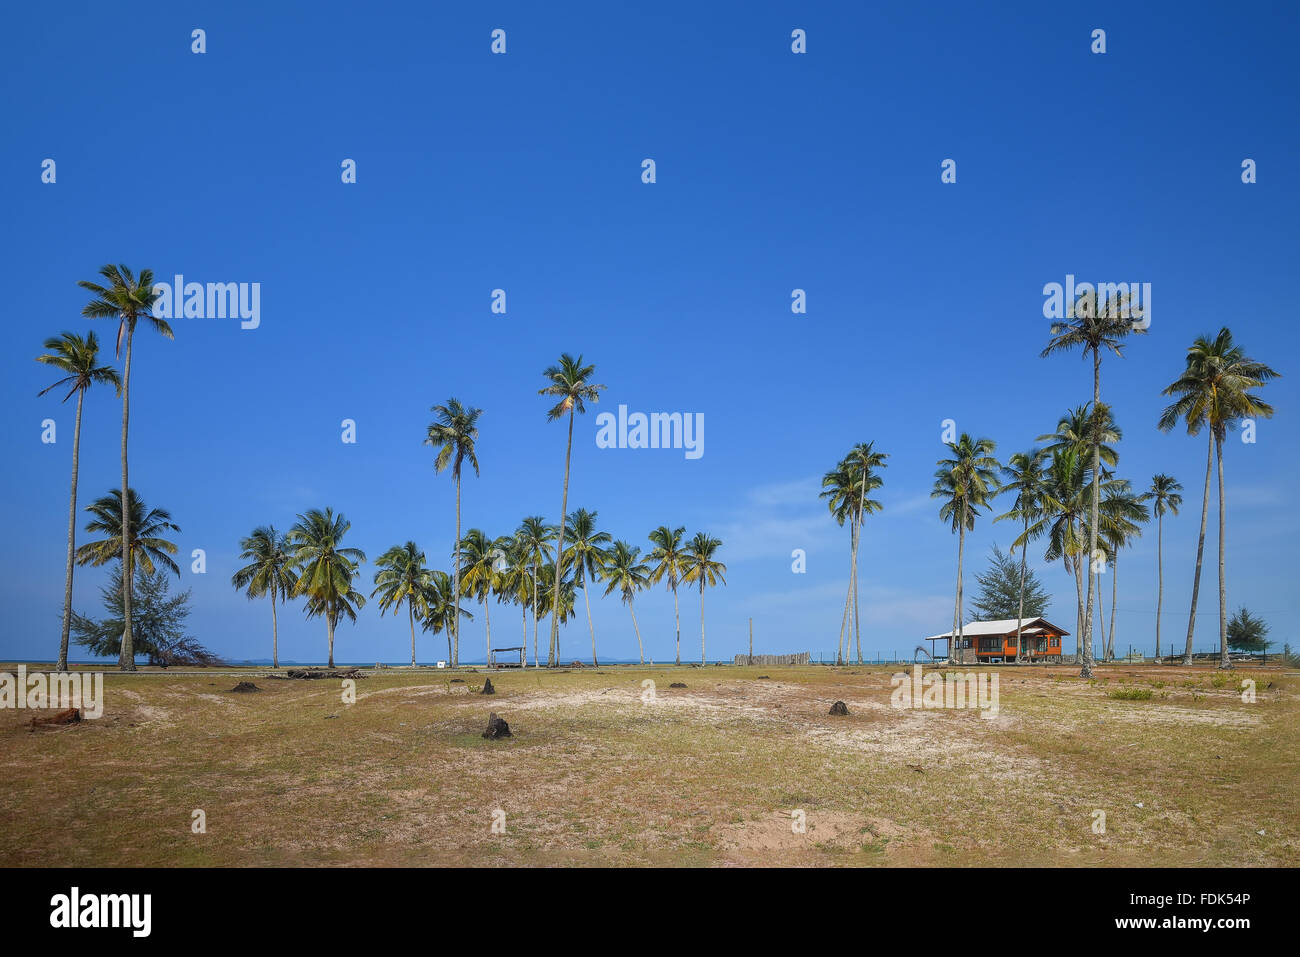 Cabane de plage et de palmiers sur la plage, Terengganu, Malaisie Banque D'Images